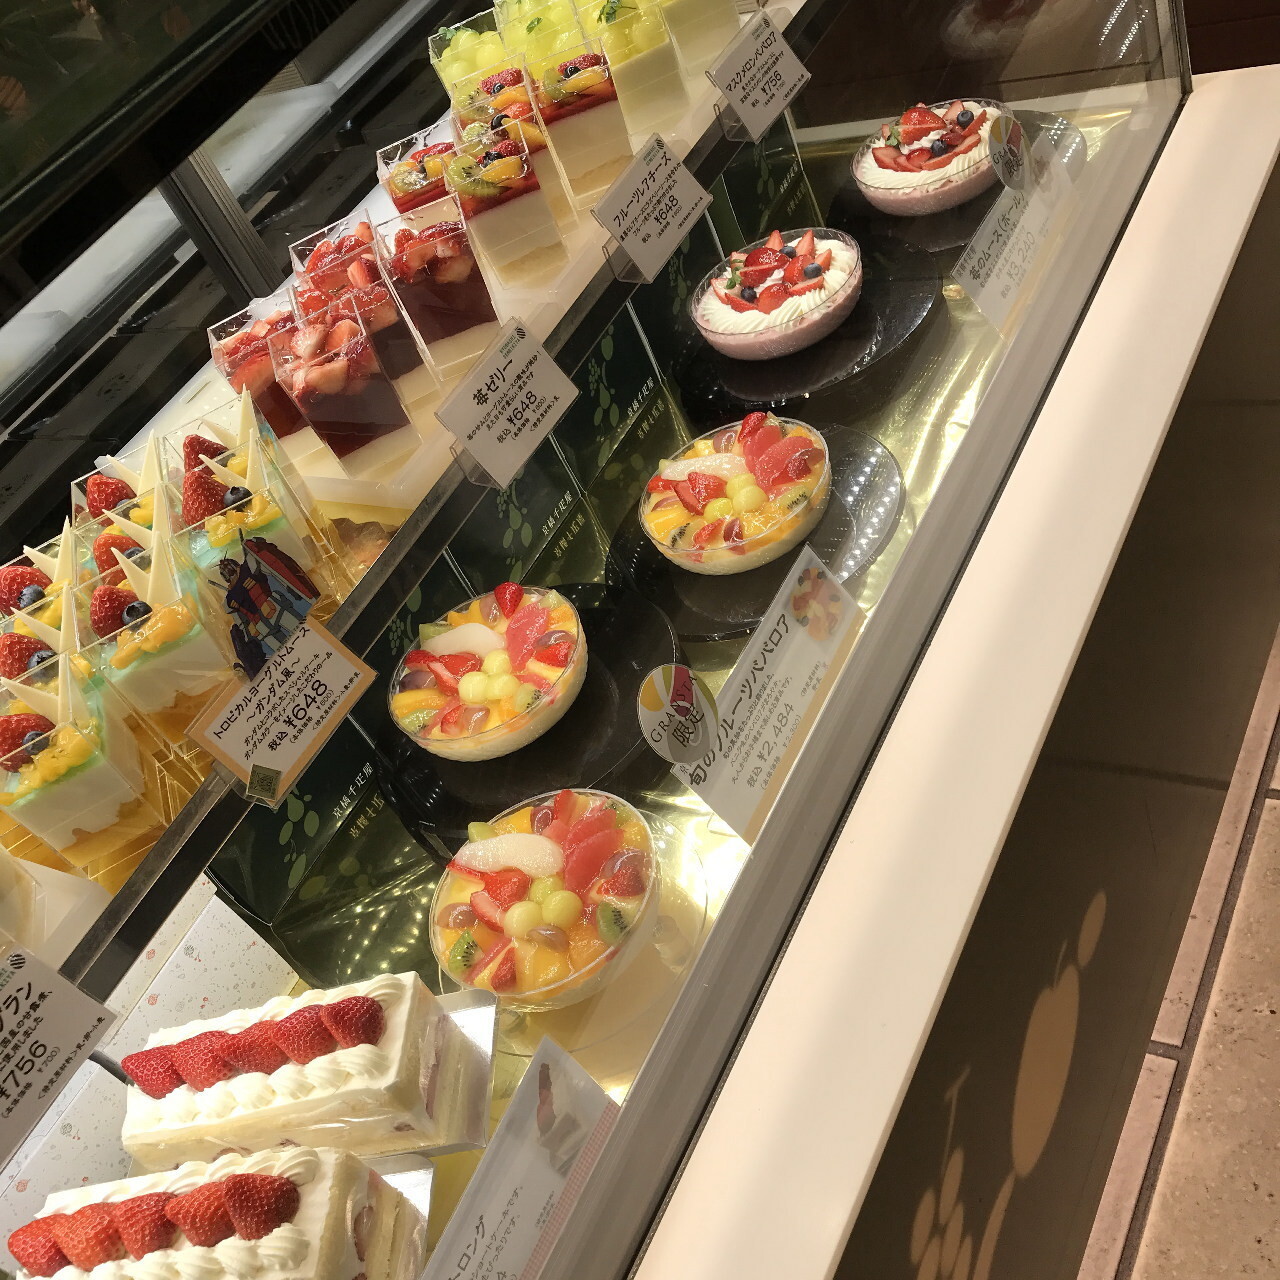 100以上 ケーキ 屋 東京 駅 美味しいお料理やケーキ